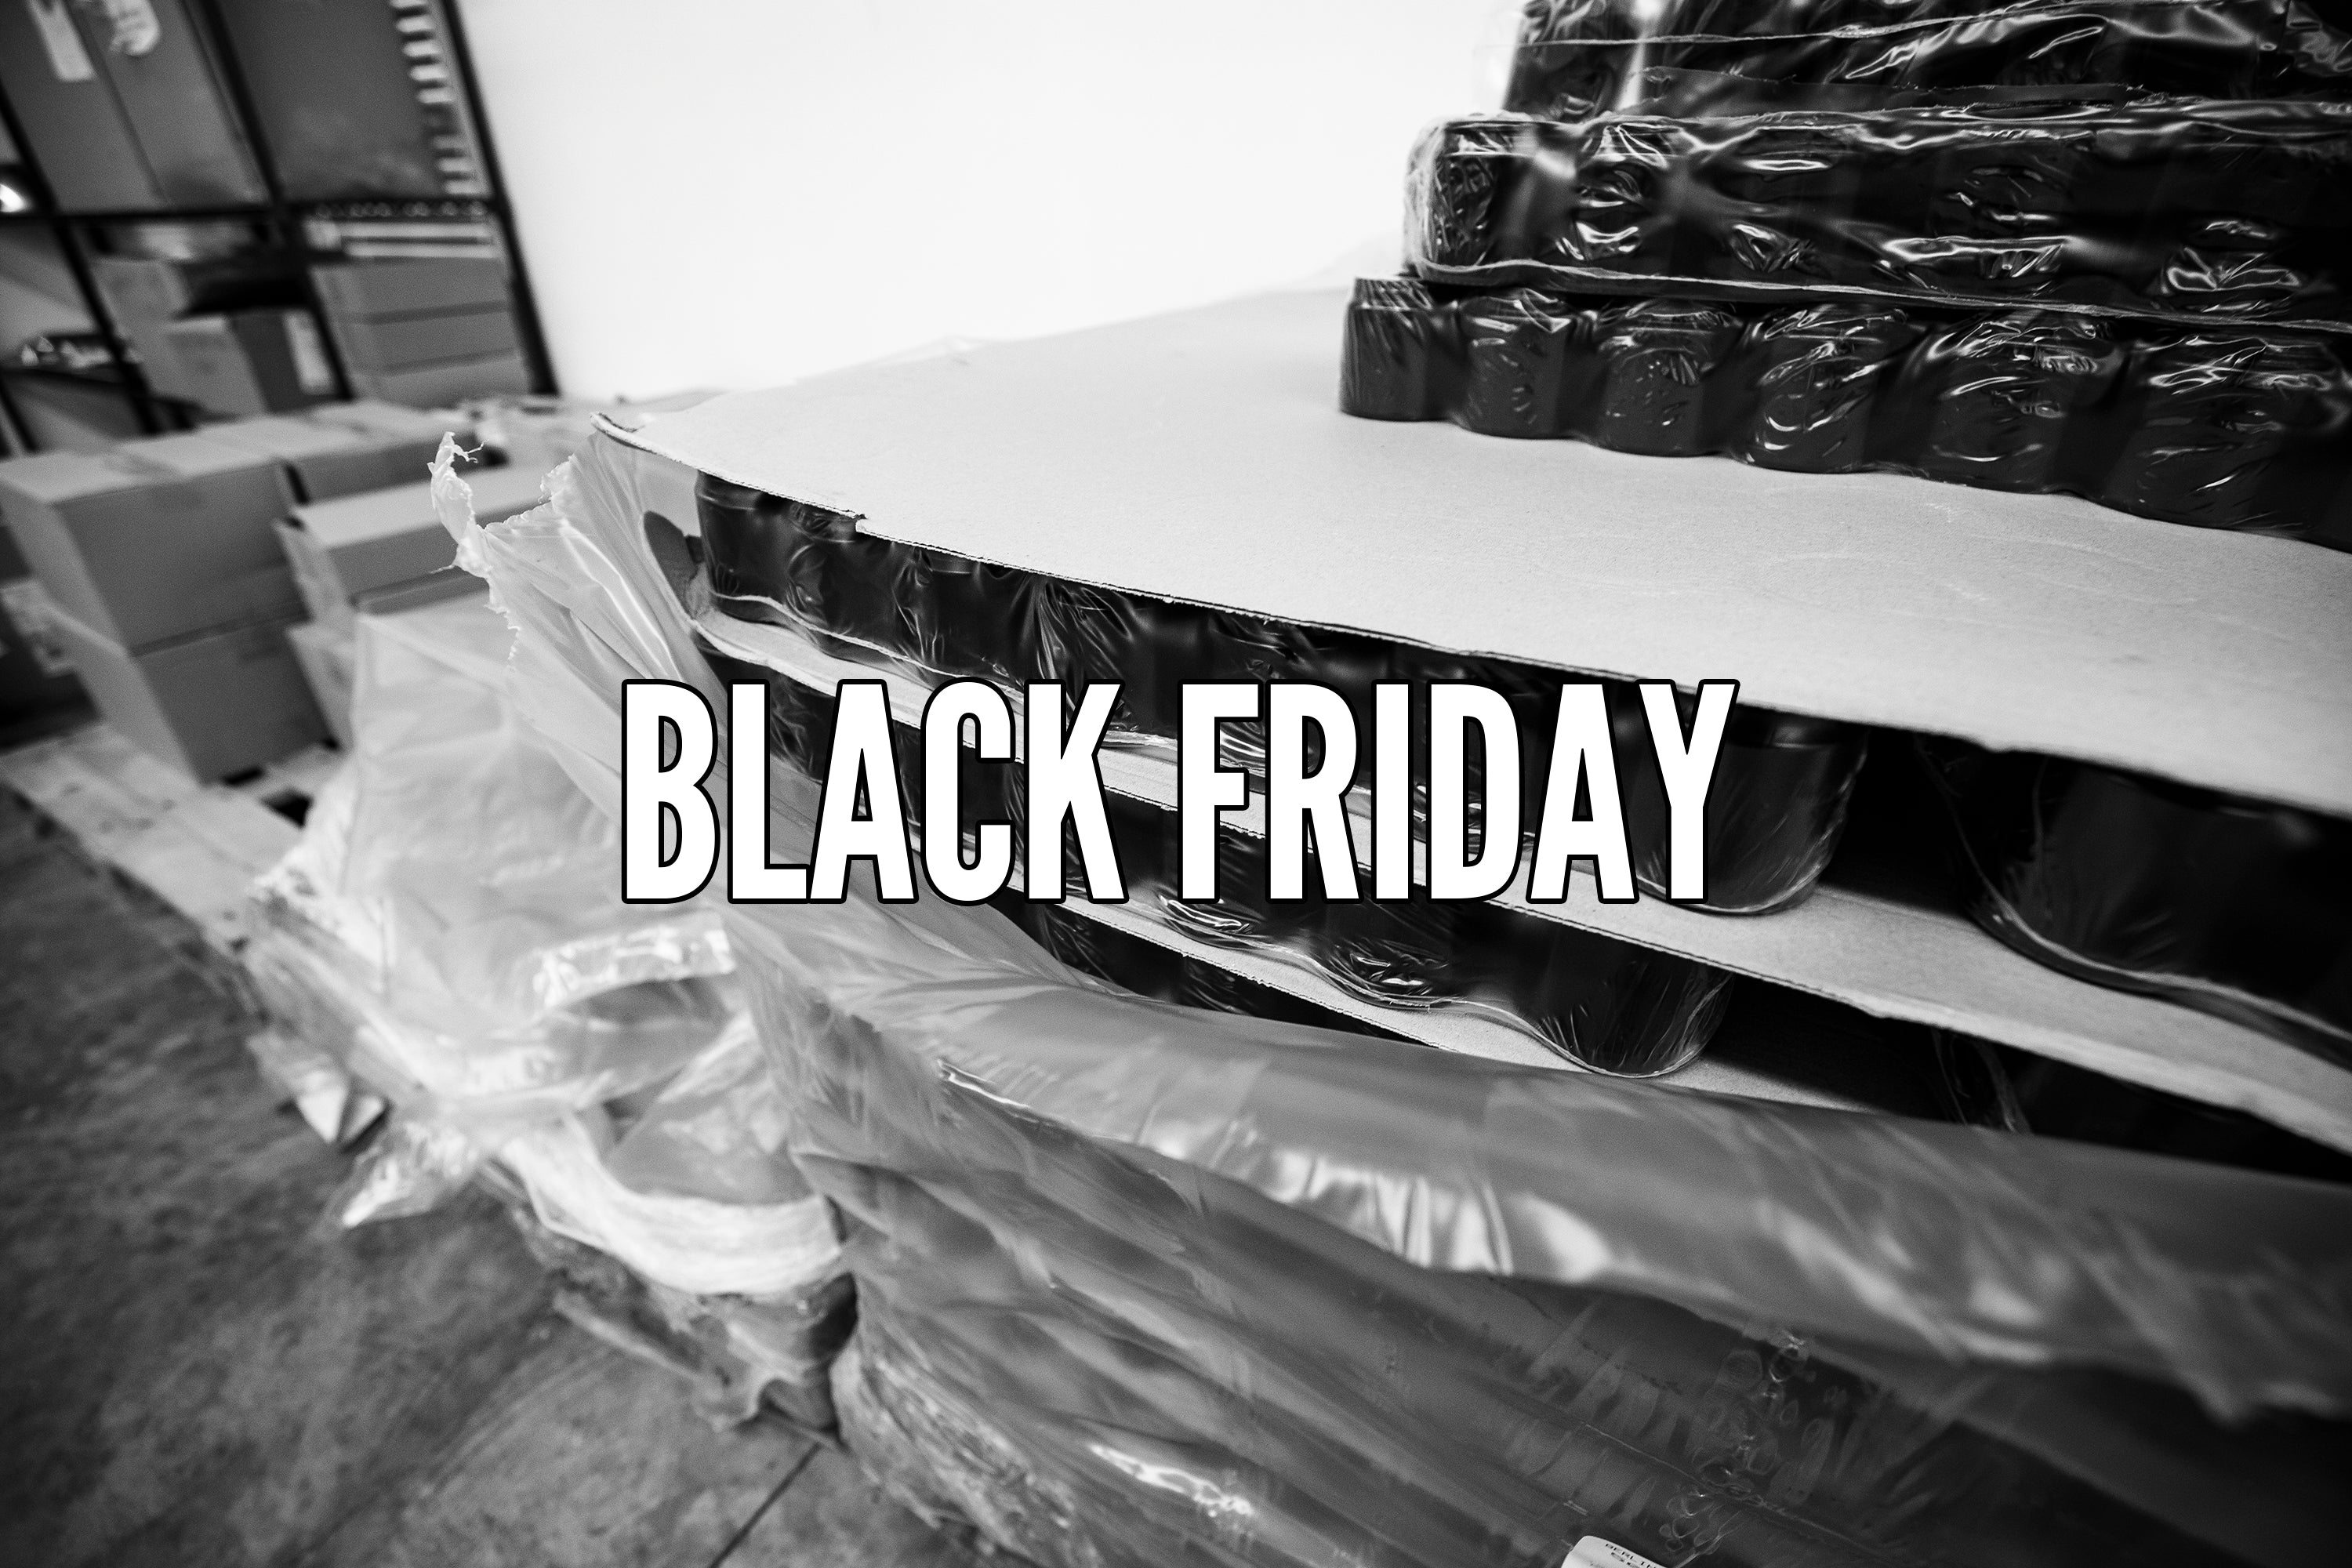 Black Friday / Cyber Monday Sale Info